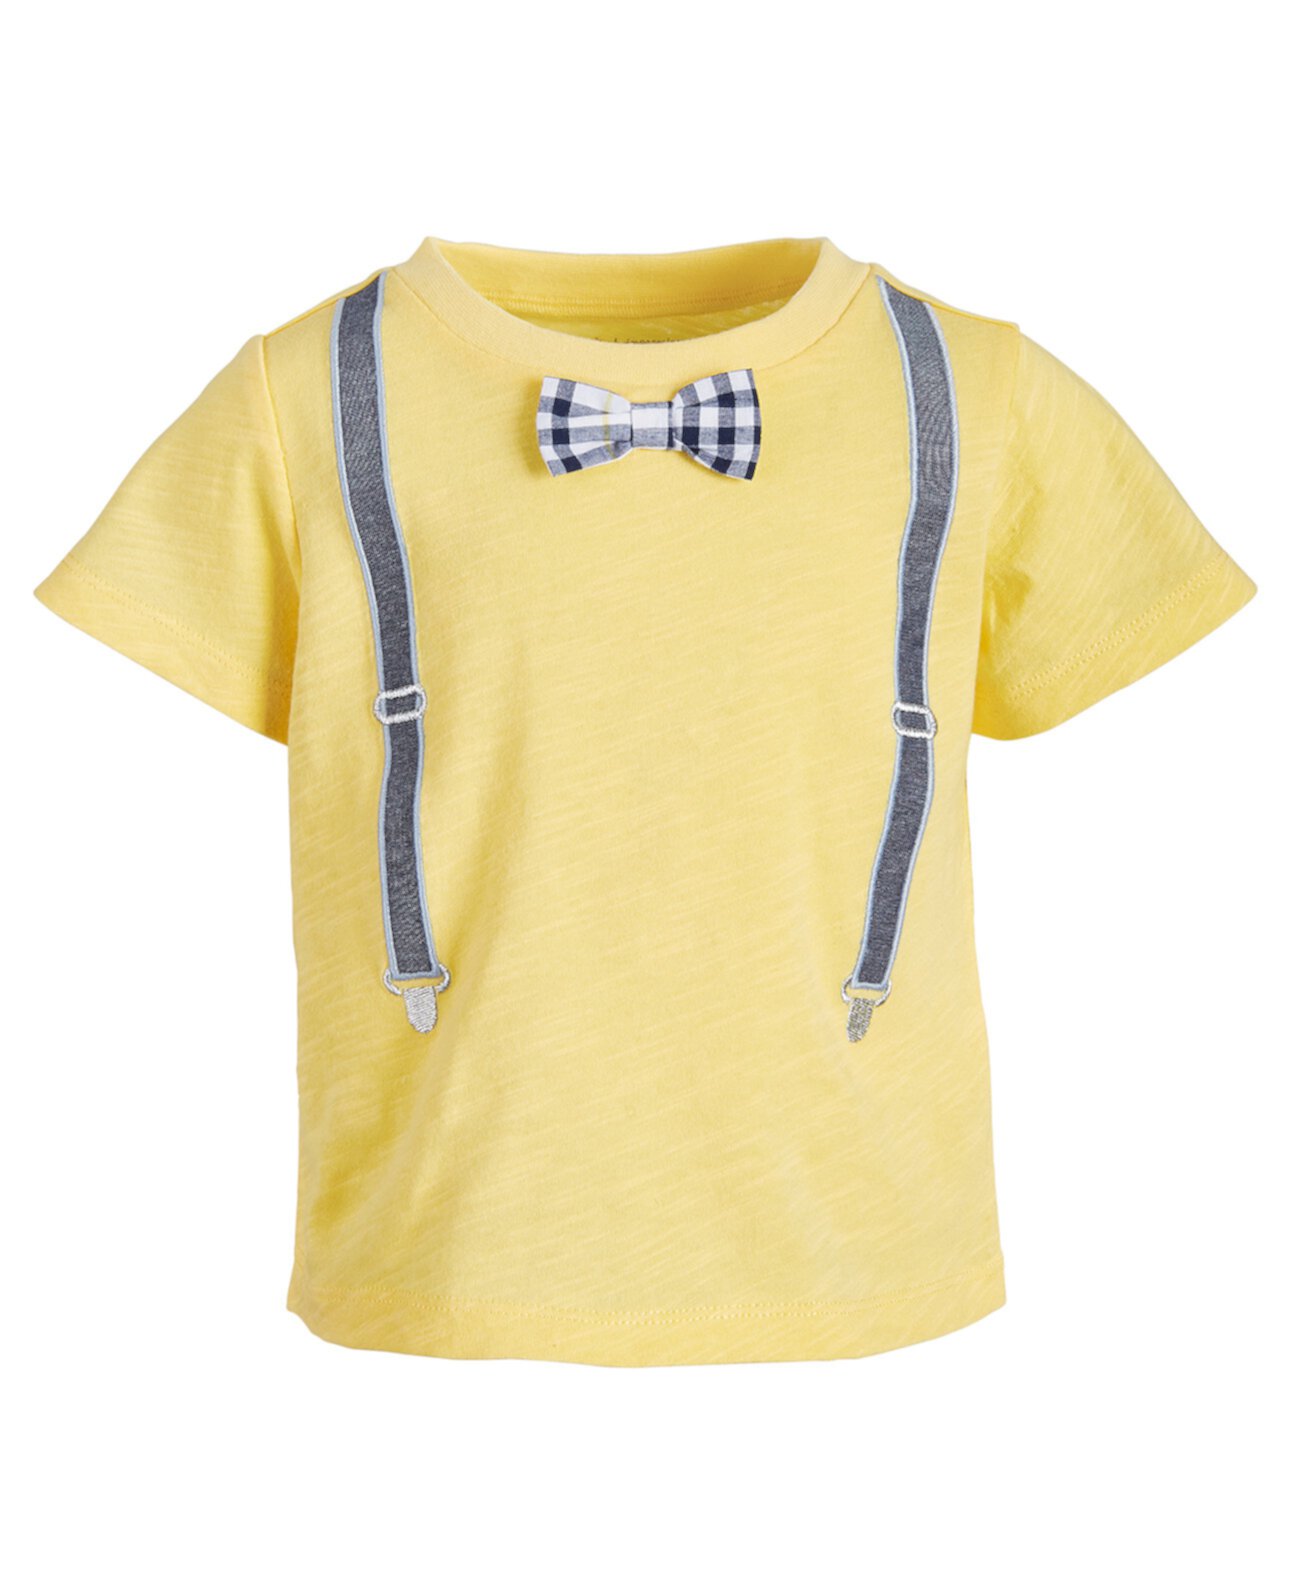 Хлопковая футболка с подтяжками для маленьких мальчиков, созданная для Macy's First Impressions